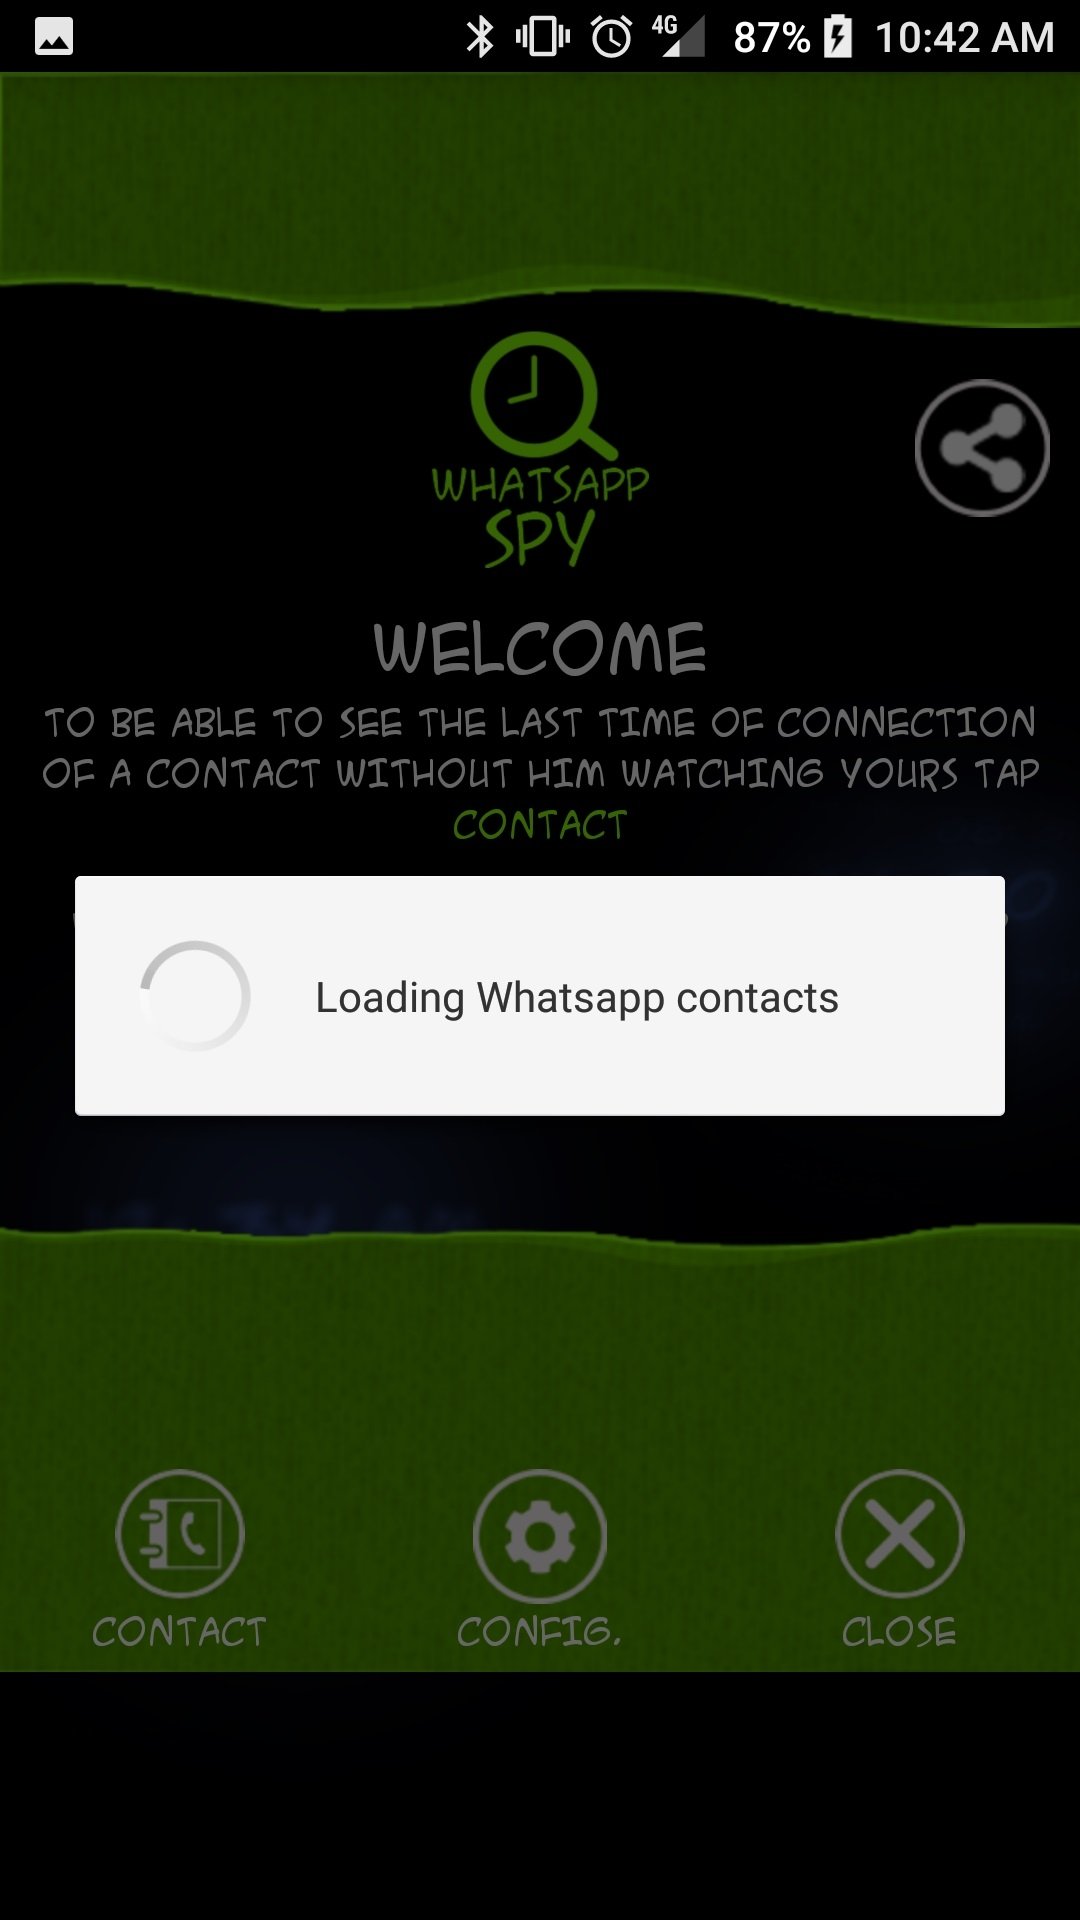 Whatsapp spy online descargar